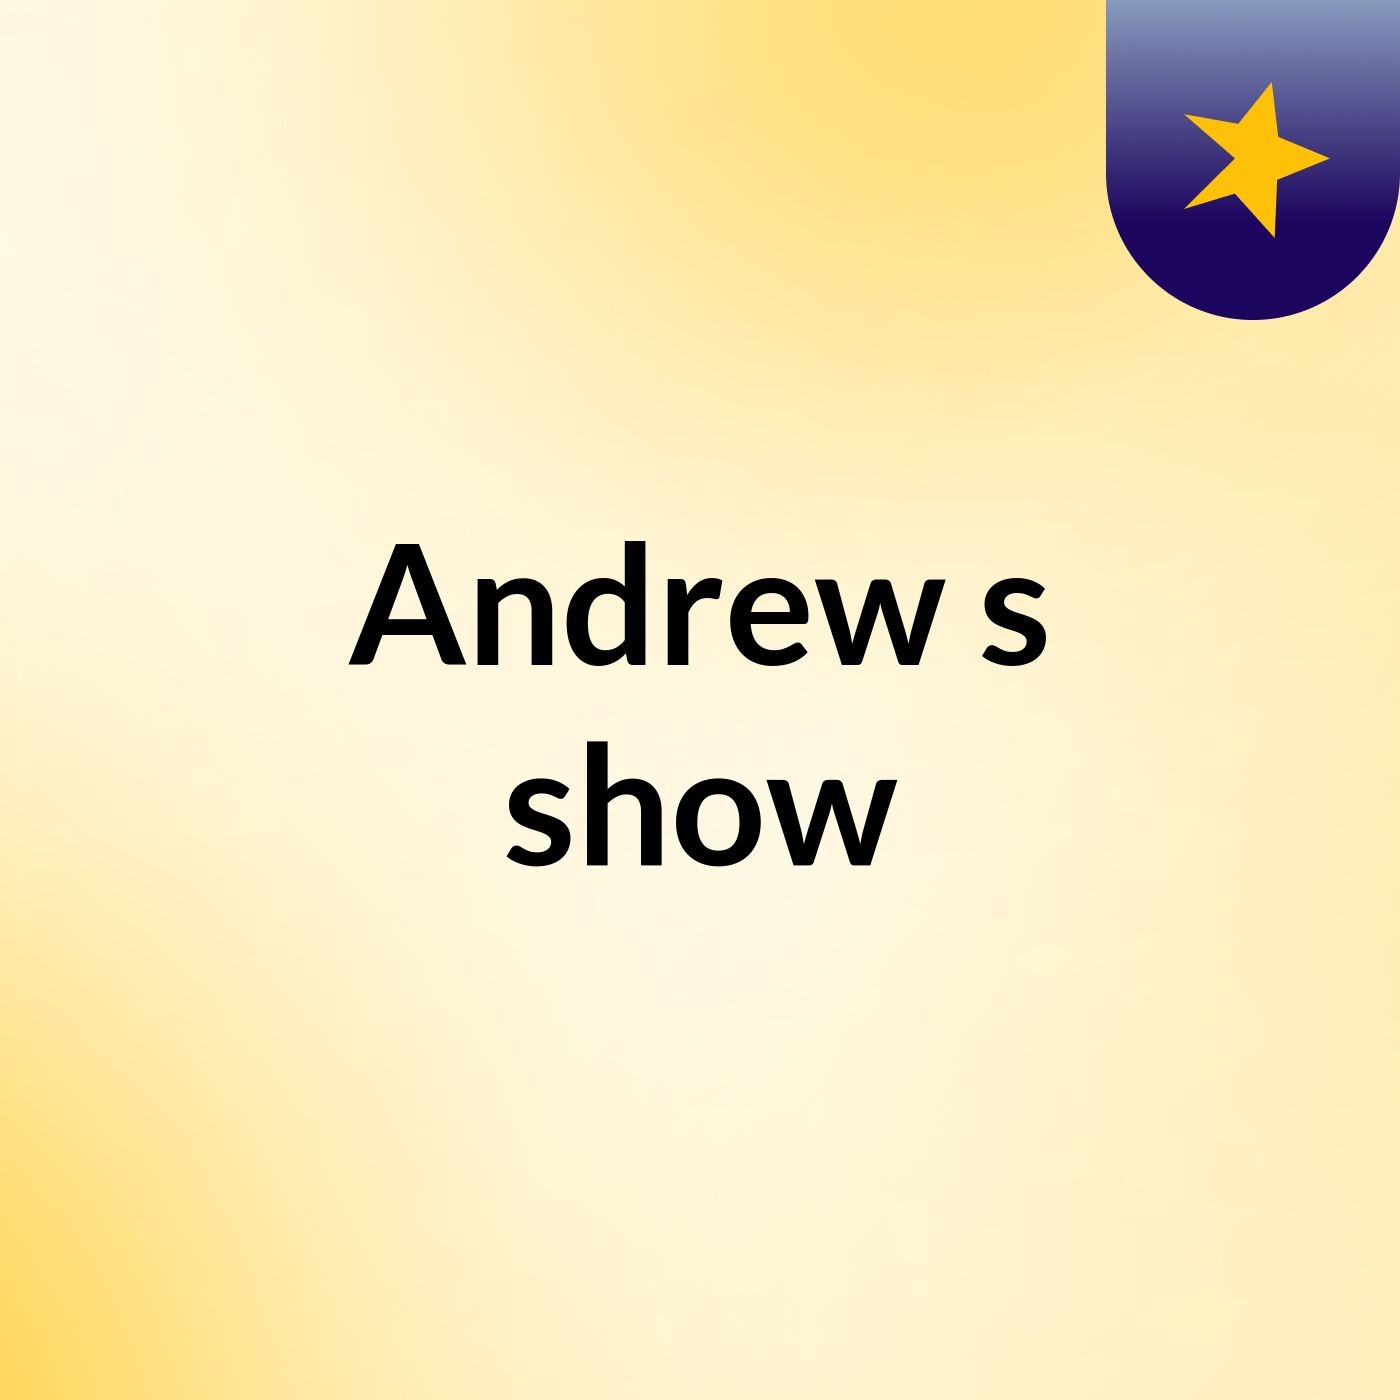 Andrew's show